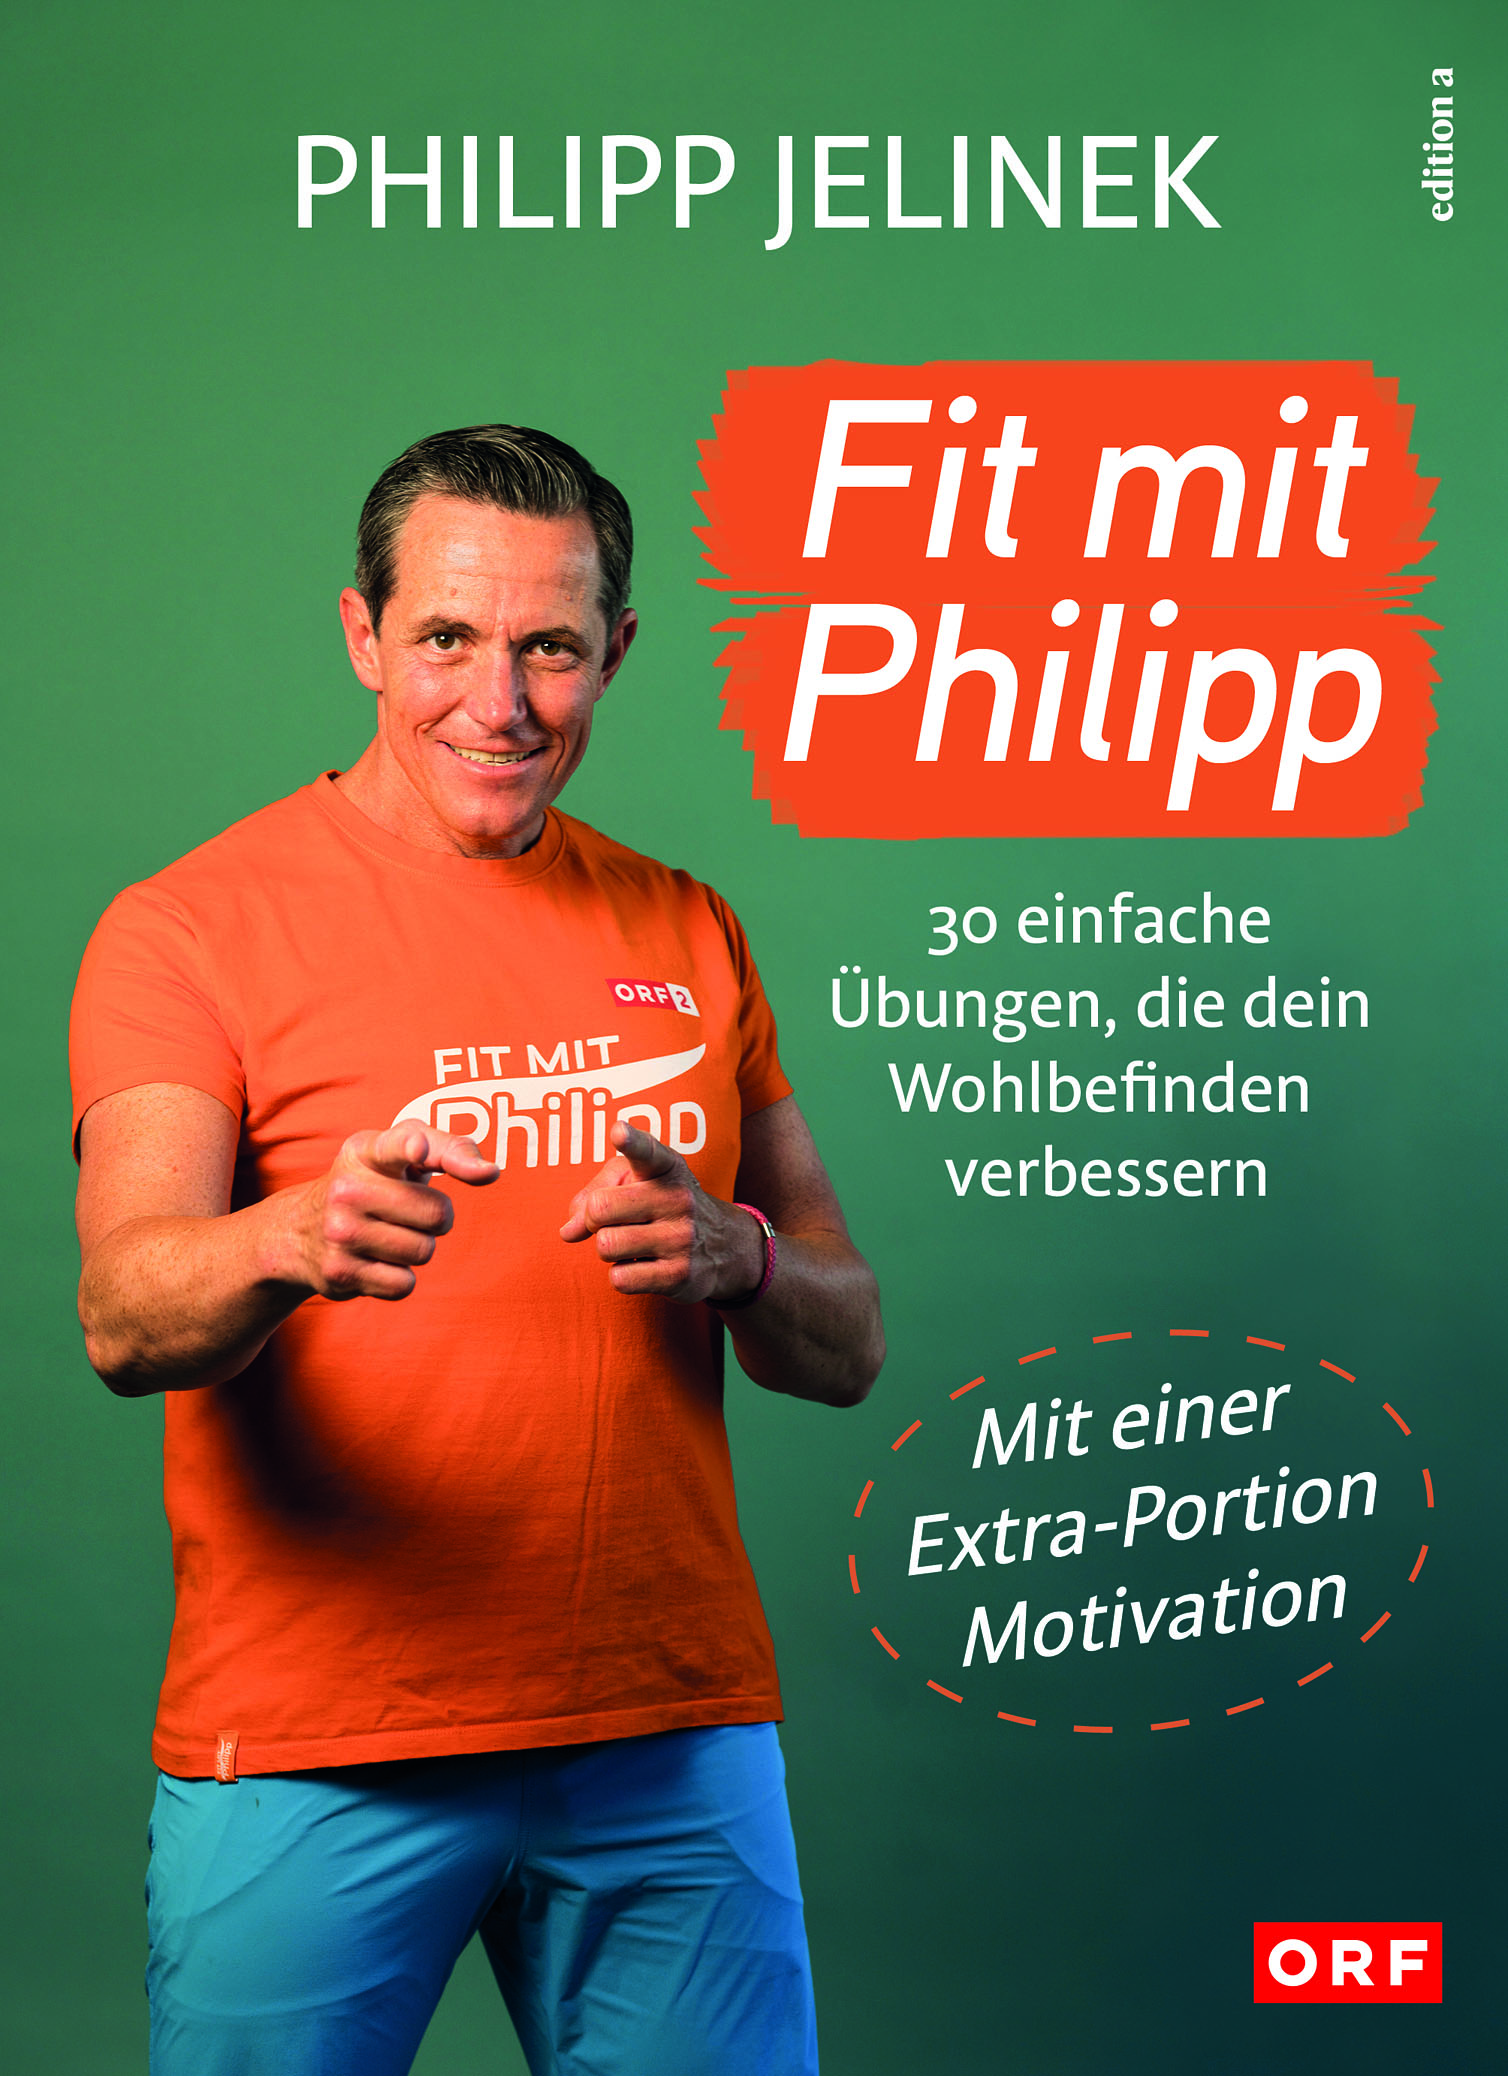 Buch mit dem Titel "Fit mit Philipp - Einfache Übungen, die dein Wohlbefinden verbessern"